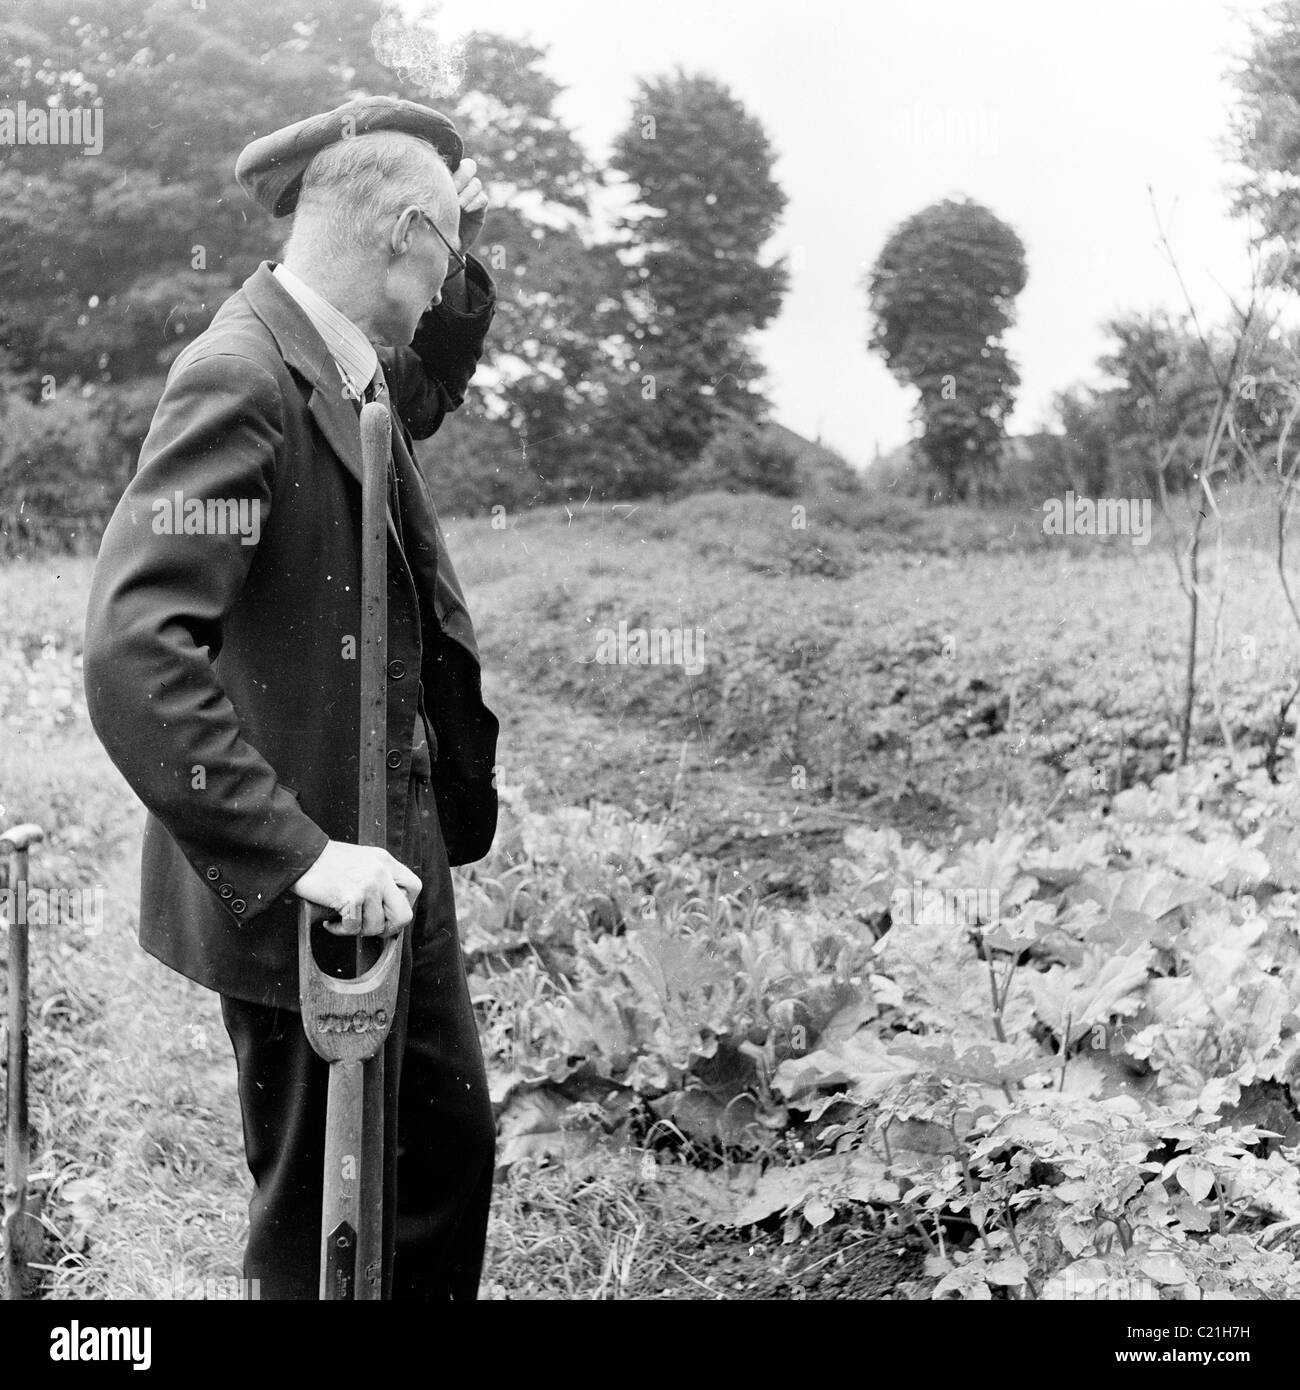 England der 1950er Jahre. Älterer Mann kratzt sich am Kopf bei seiner Zuteilung in diesem historischen Bild von J Allan Cash. Stockfoto